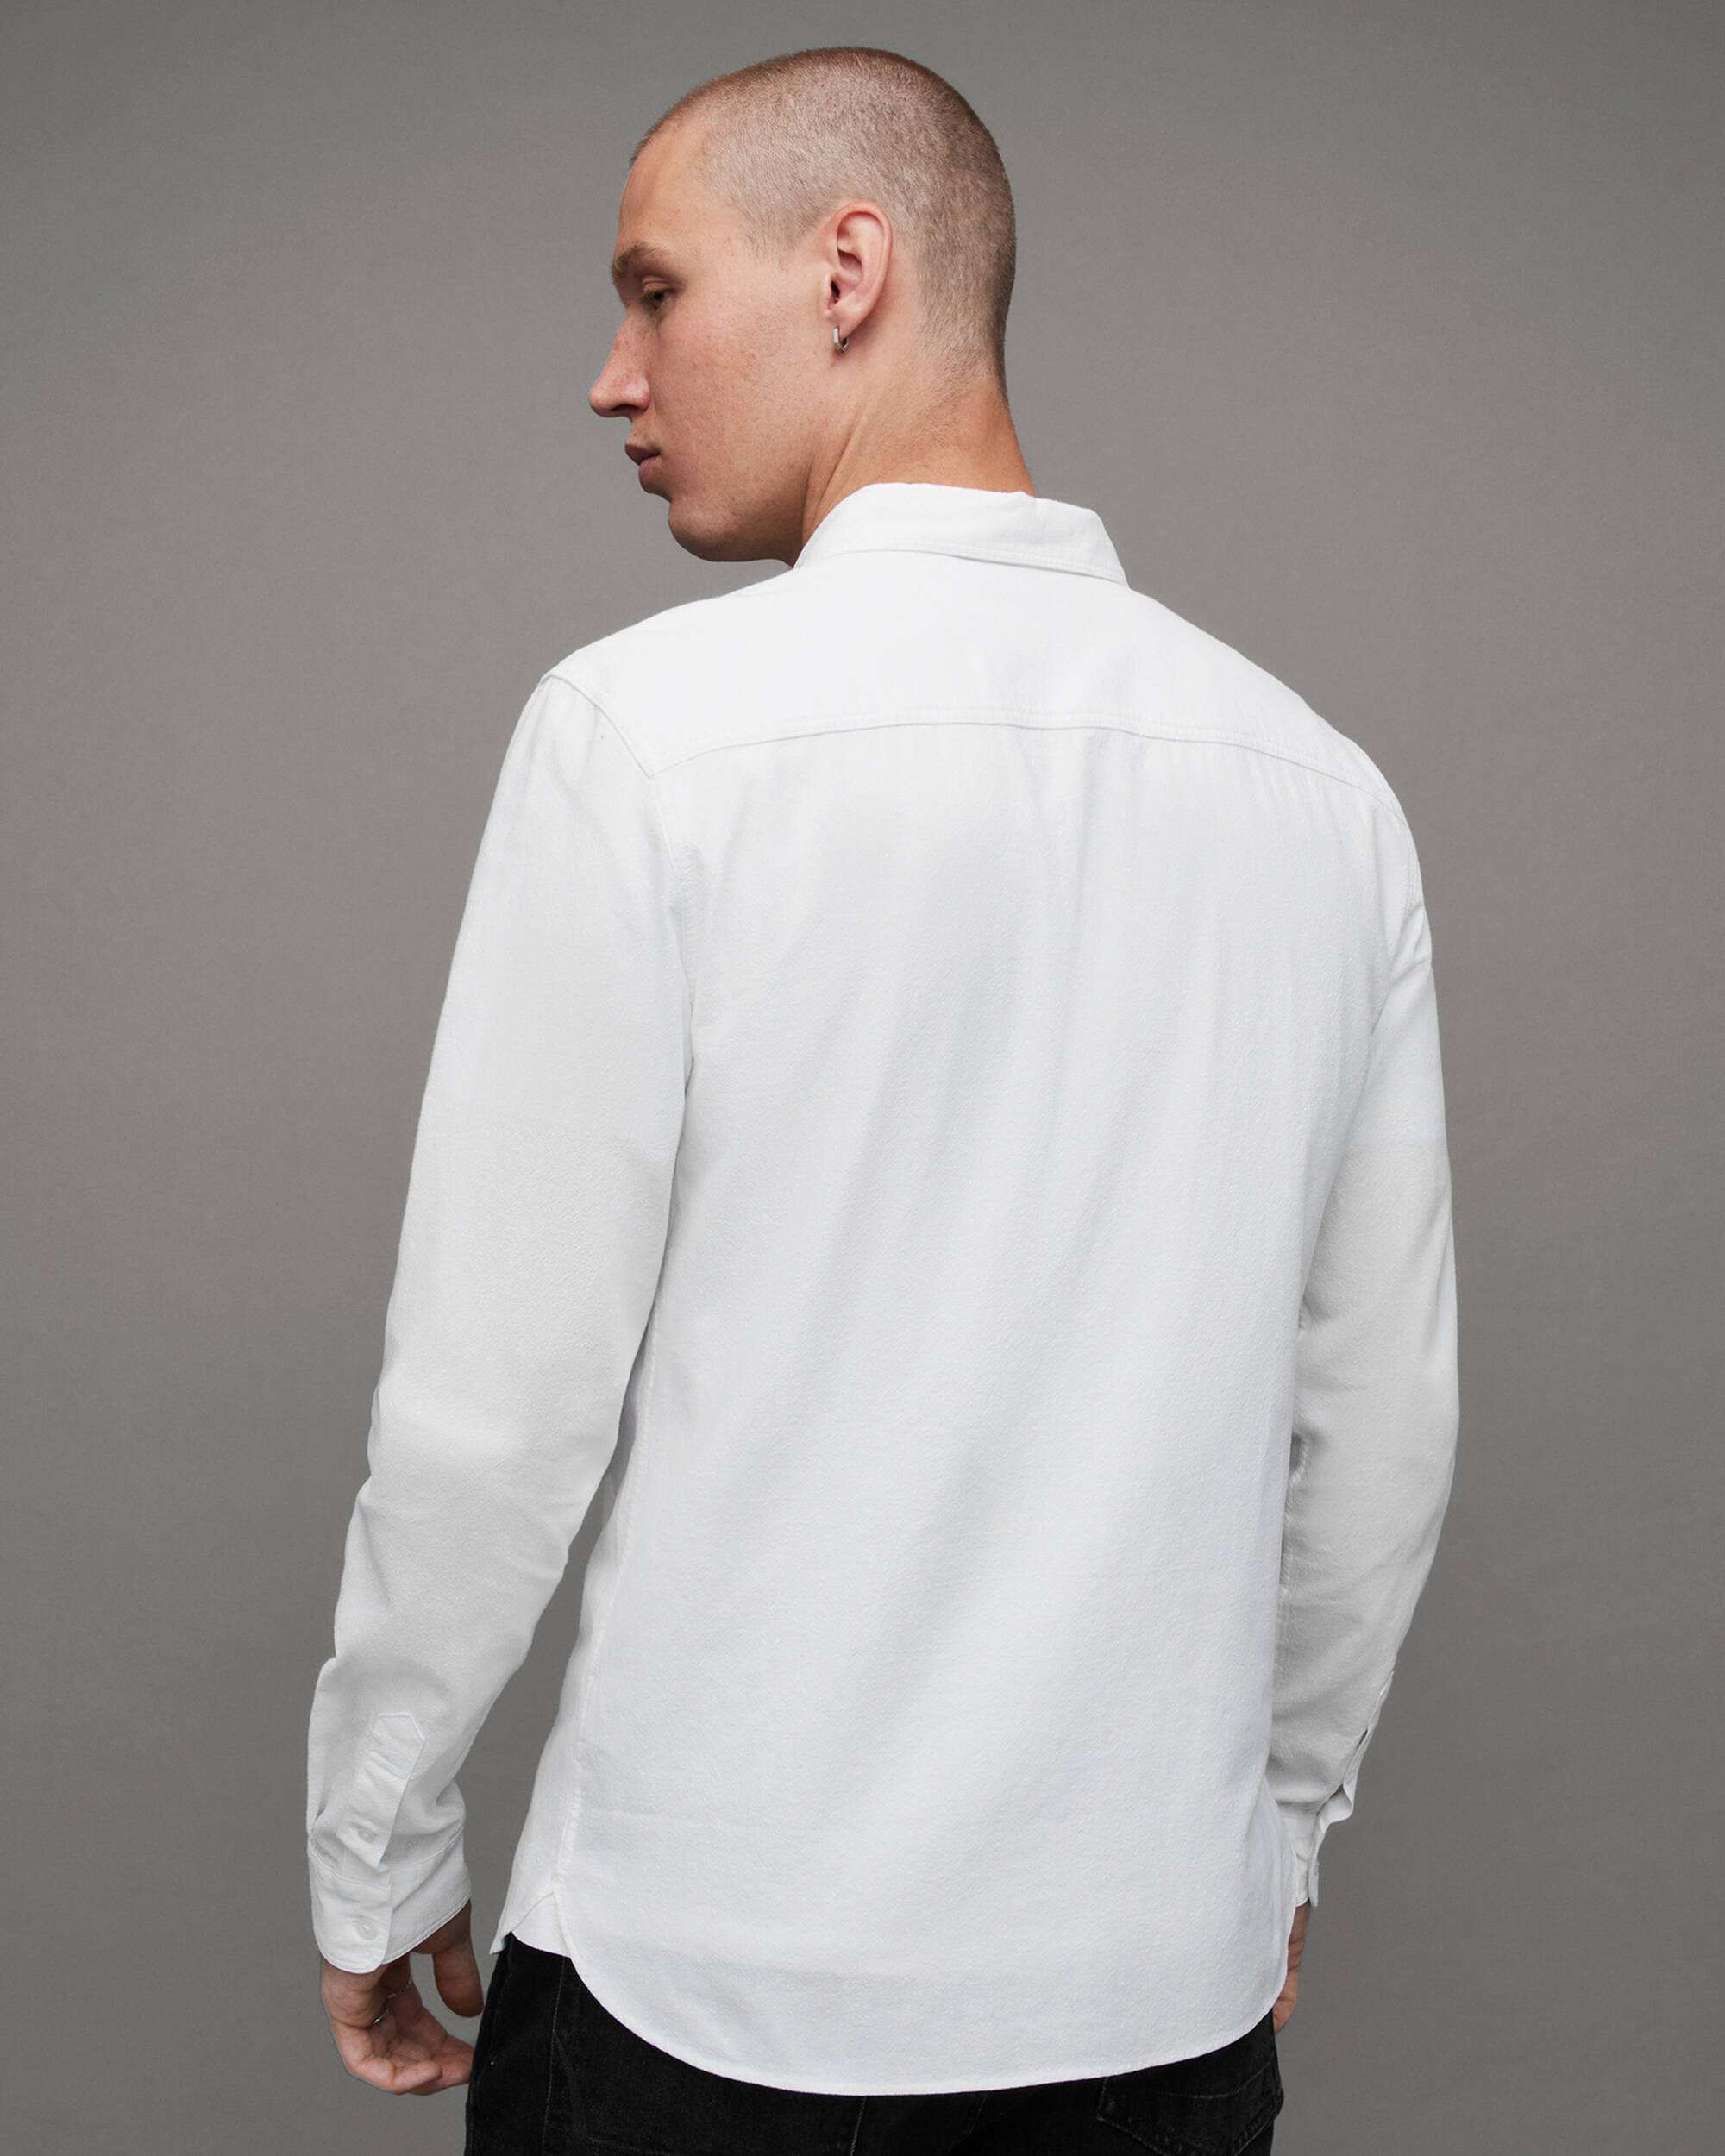 Lovell Slim Fit Ramskull Shirt White | ALLSAINTS US